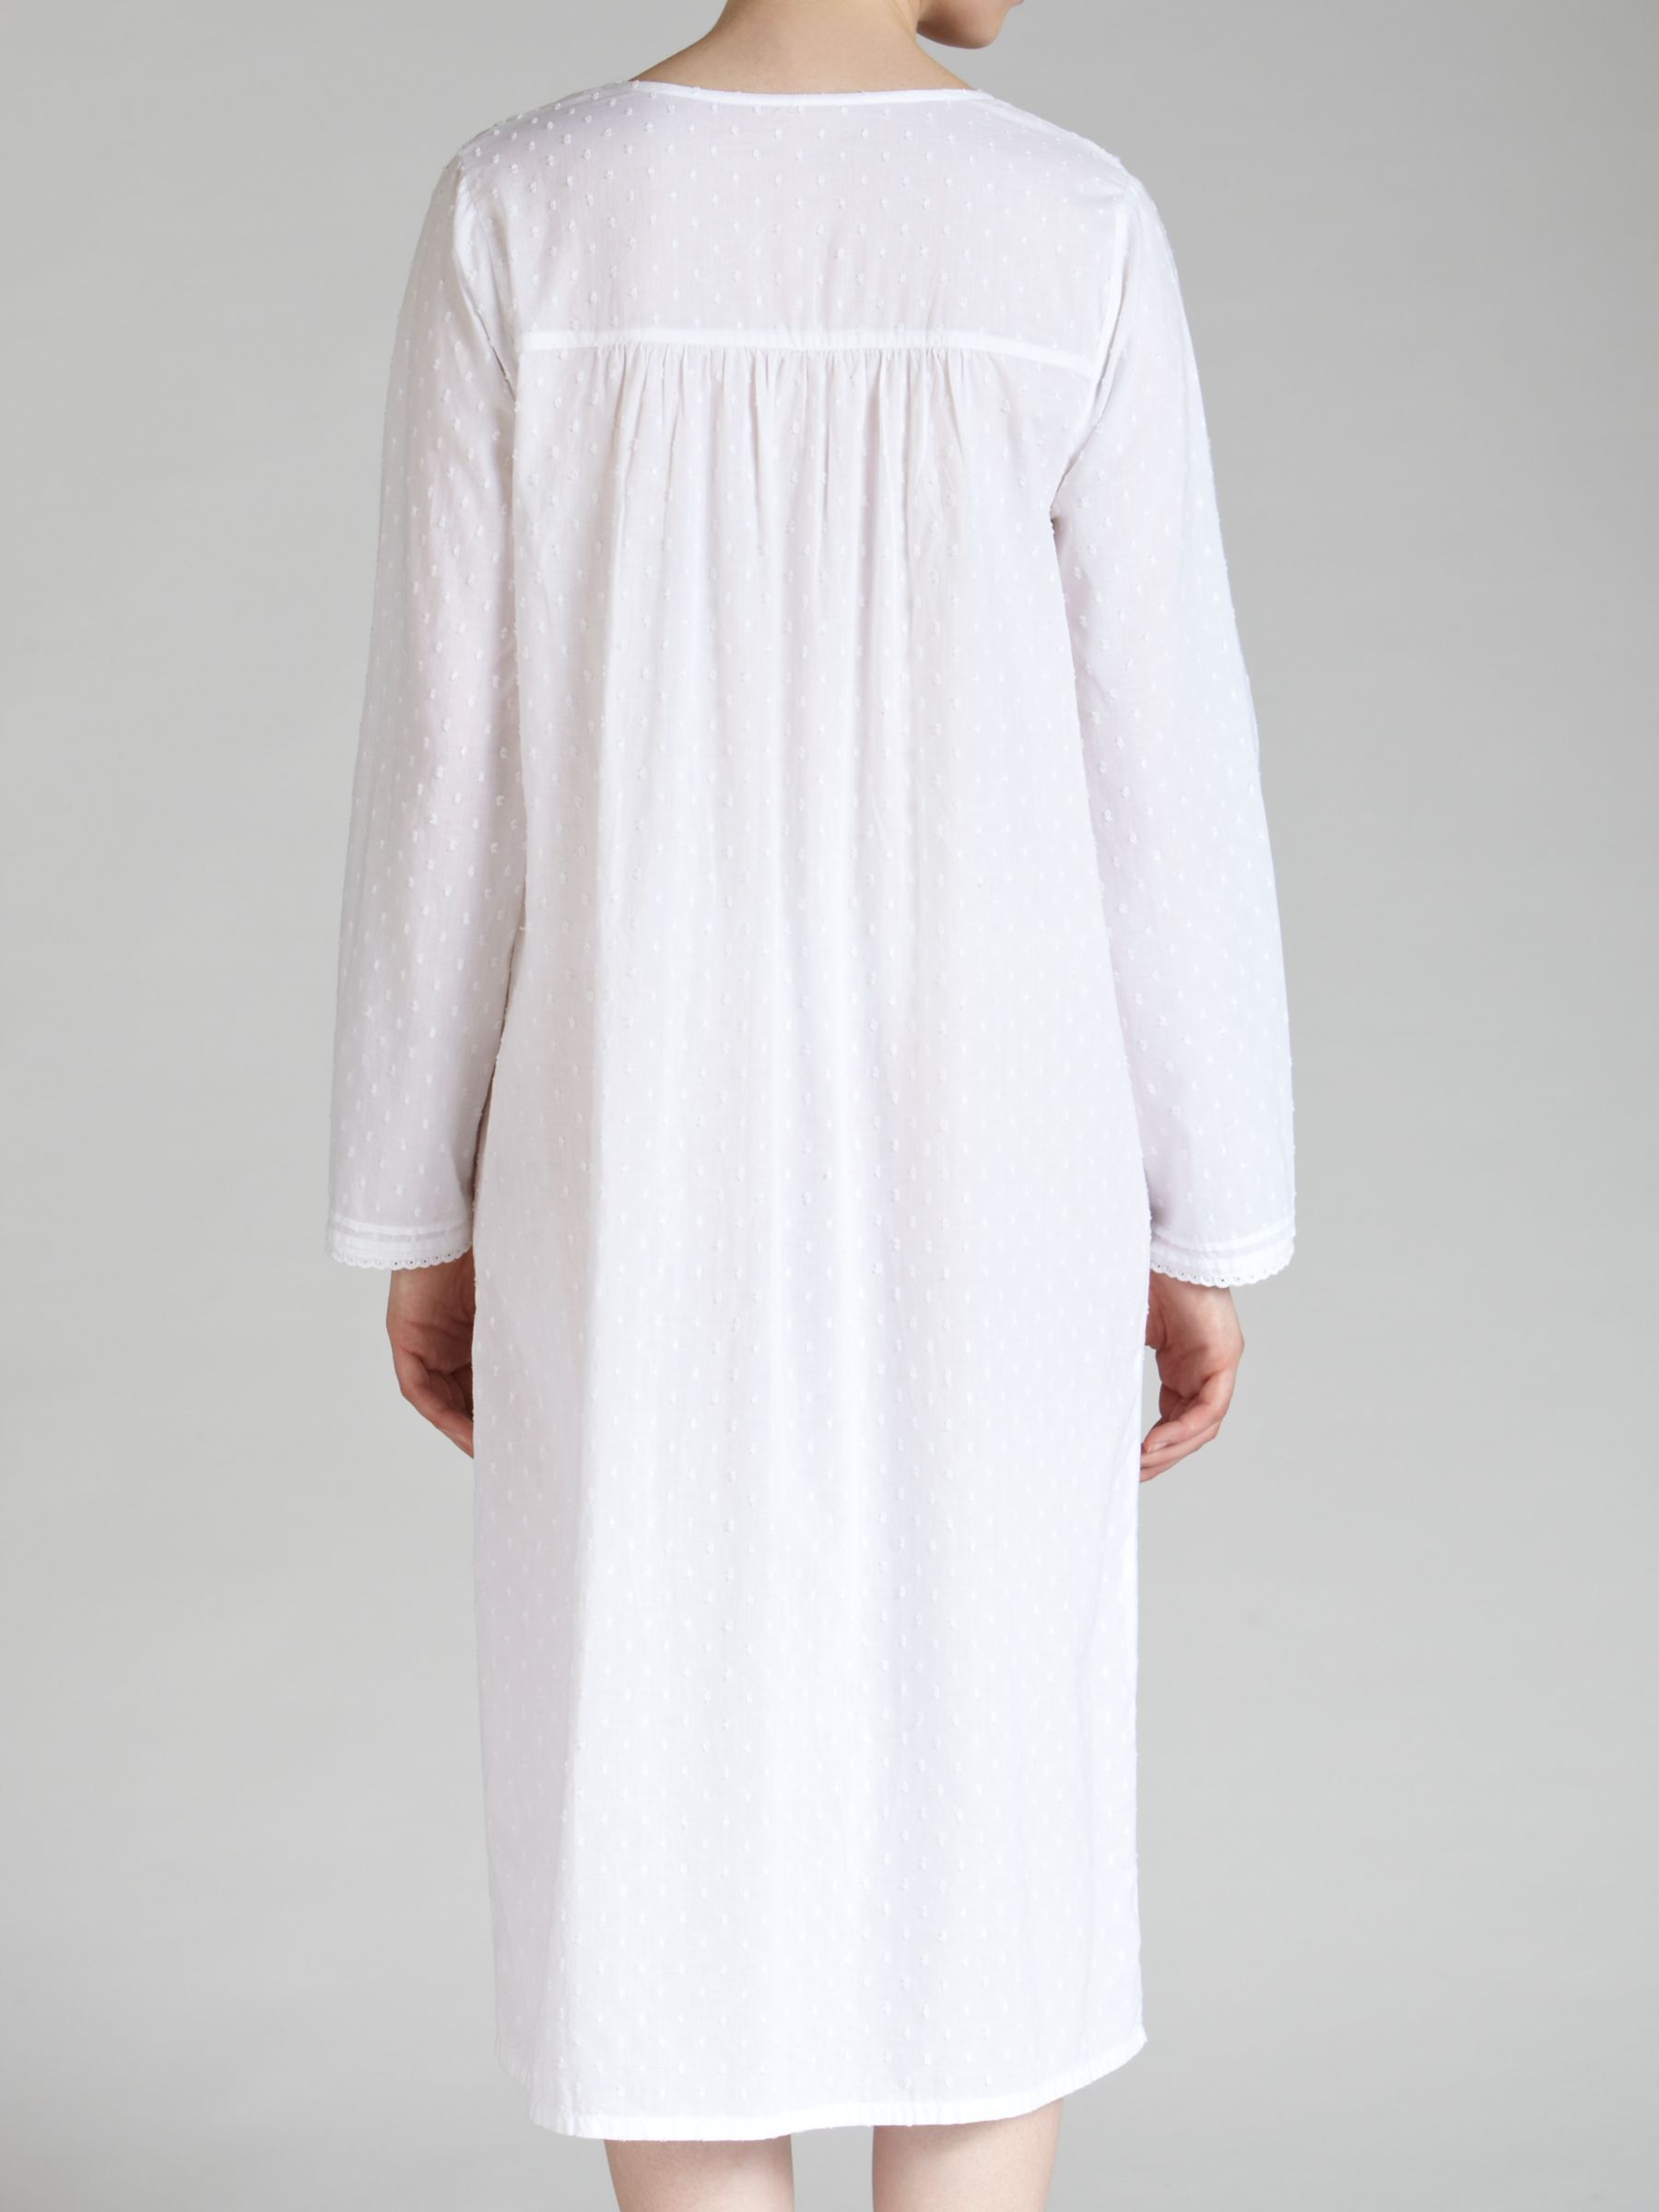 white cotton long nightdress